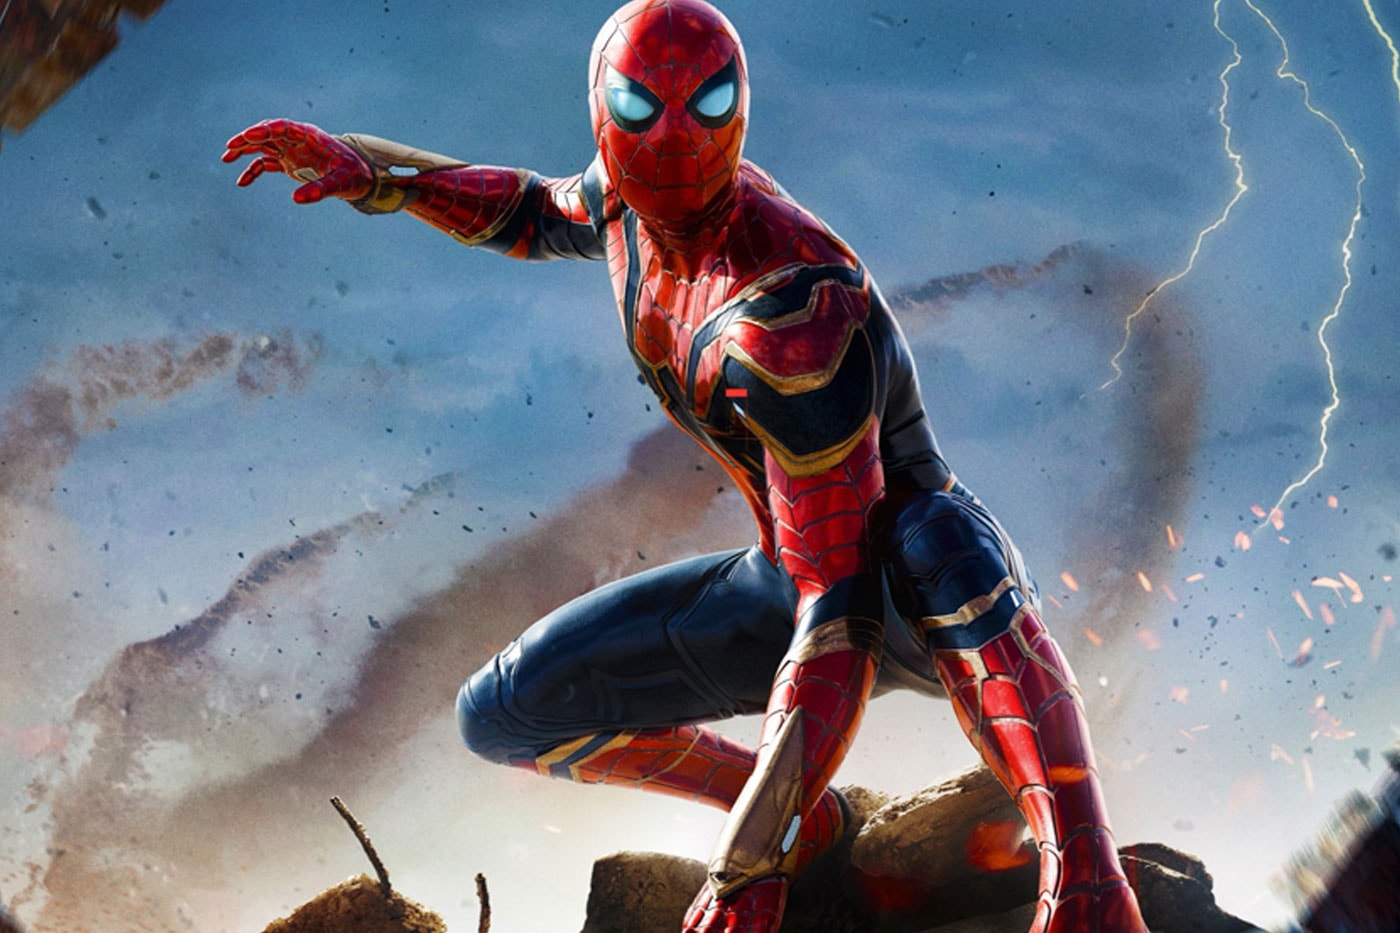 ディズニーとソニーが『スパイダーマン』シリーズの新作6本を計画中との噂 marvel disney sony Future Spider-Man Plans Rumors 